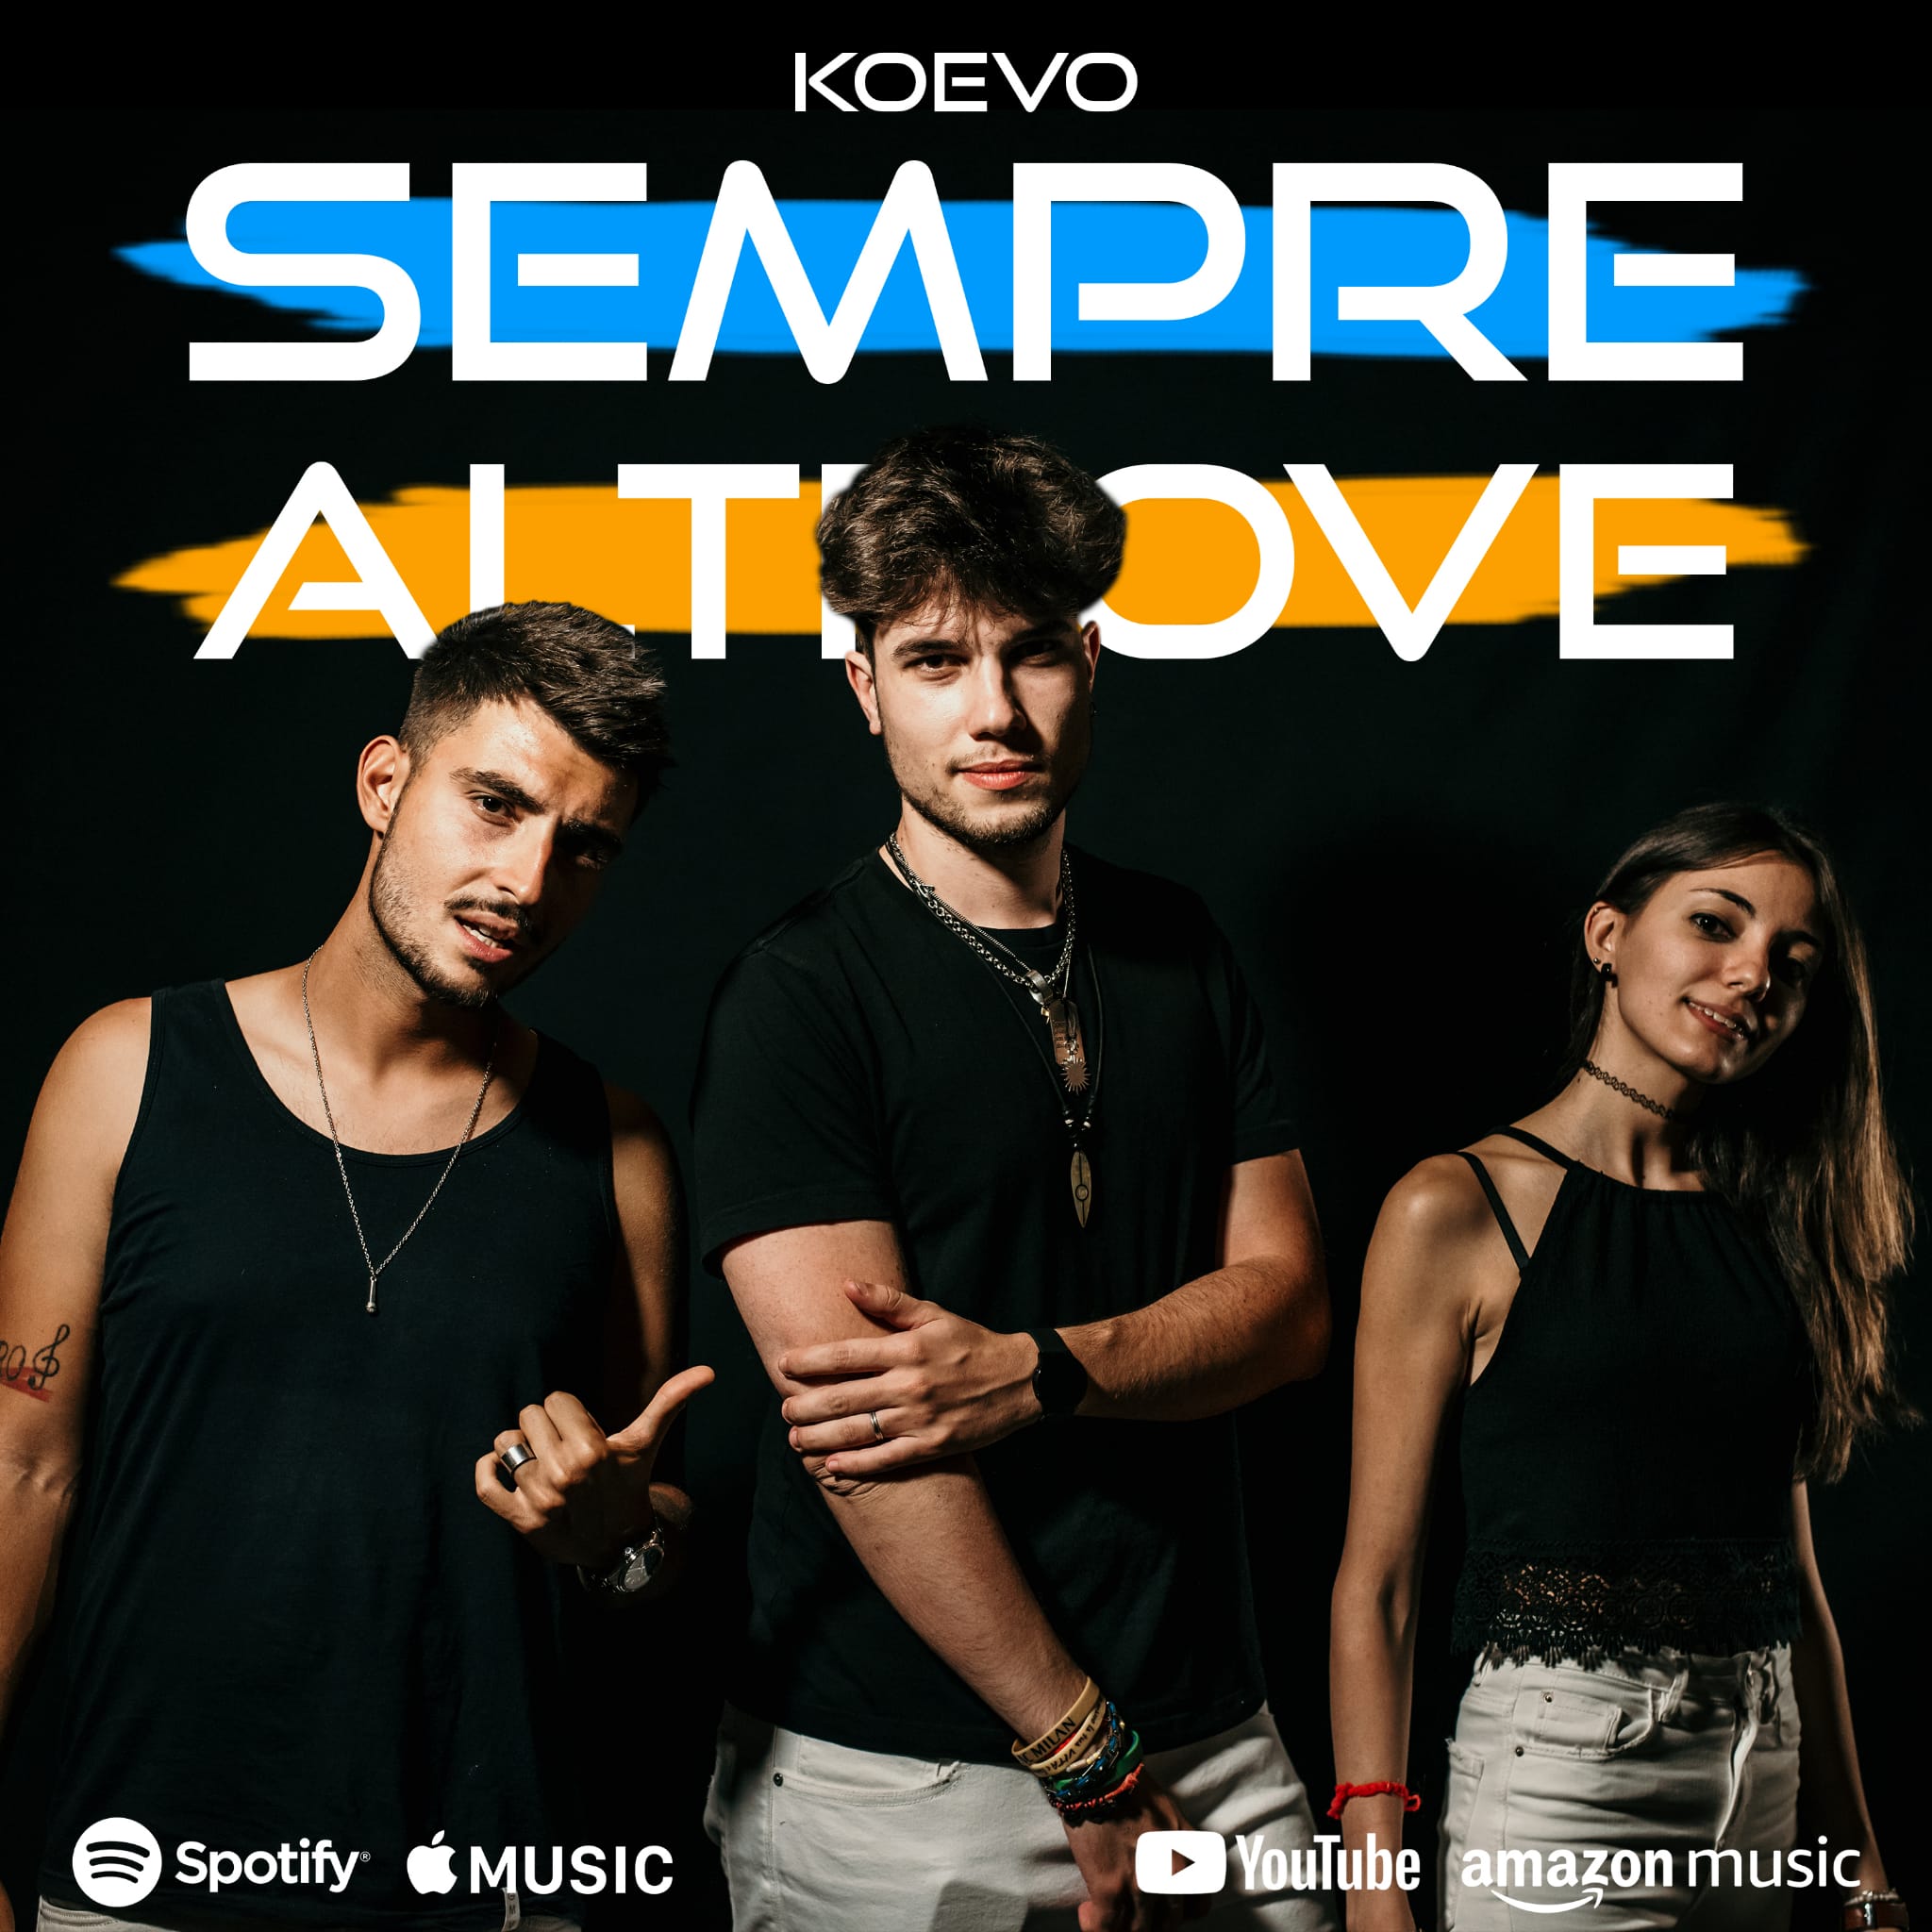 La band torinese Koevo presenta il nuovo singolo “Sempre altrove”